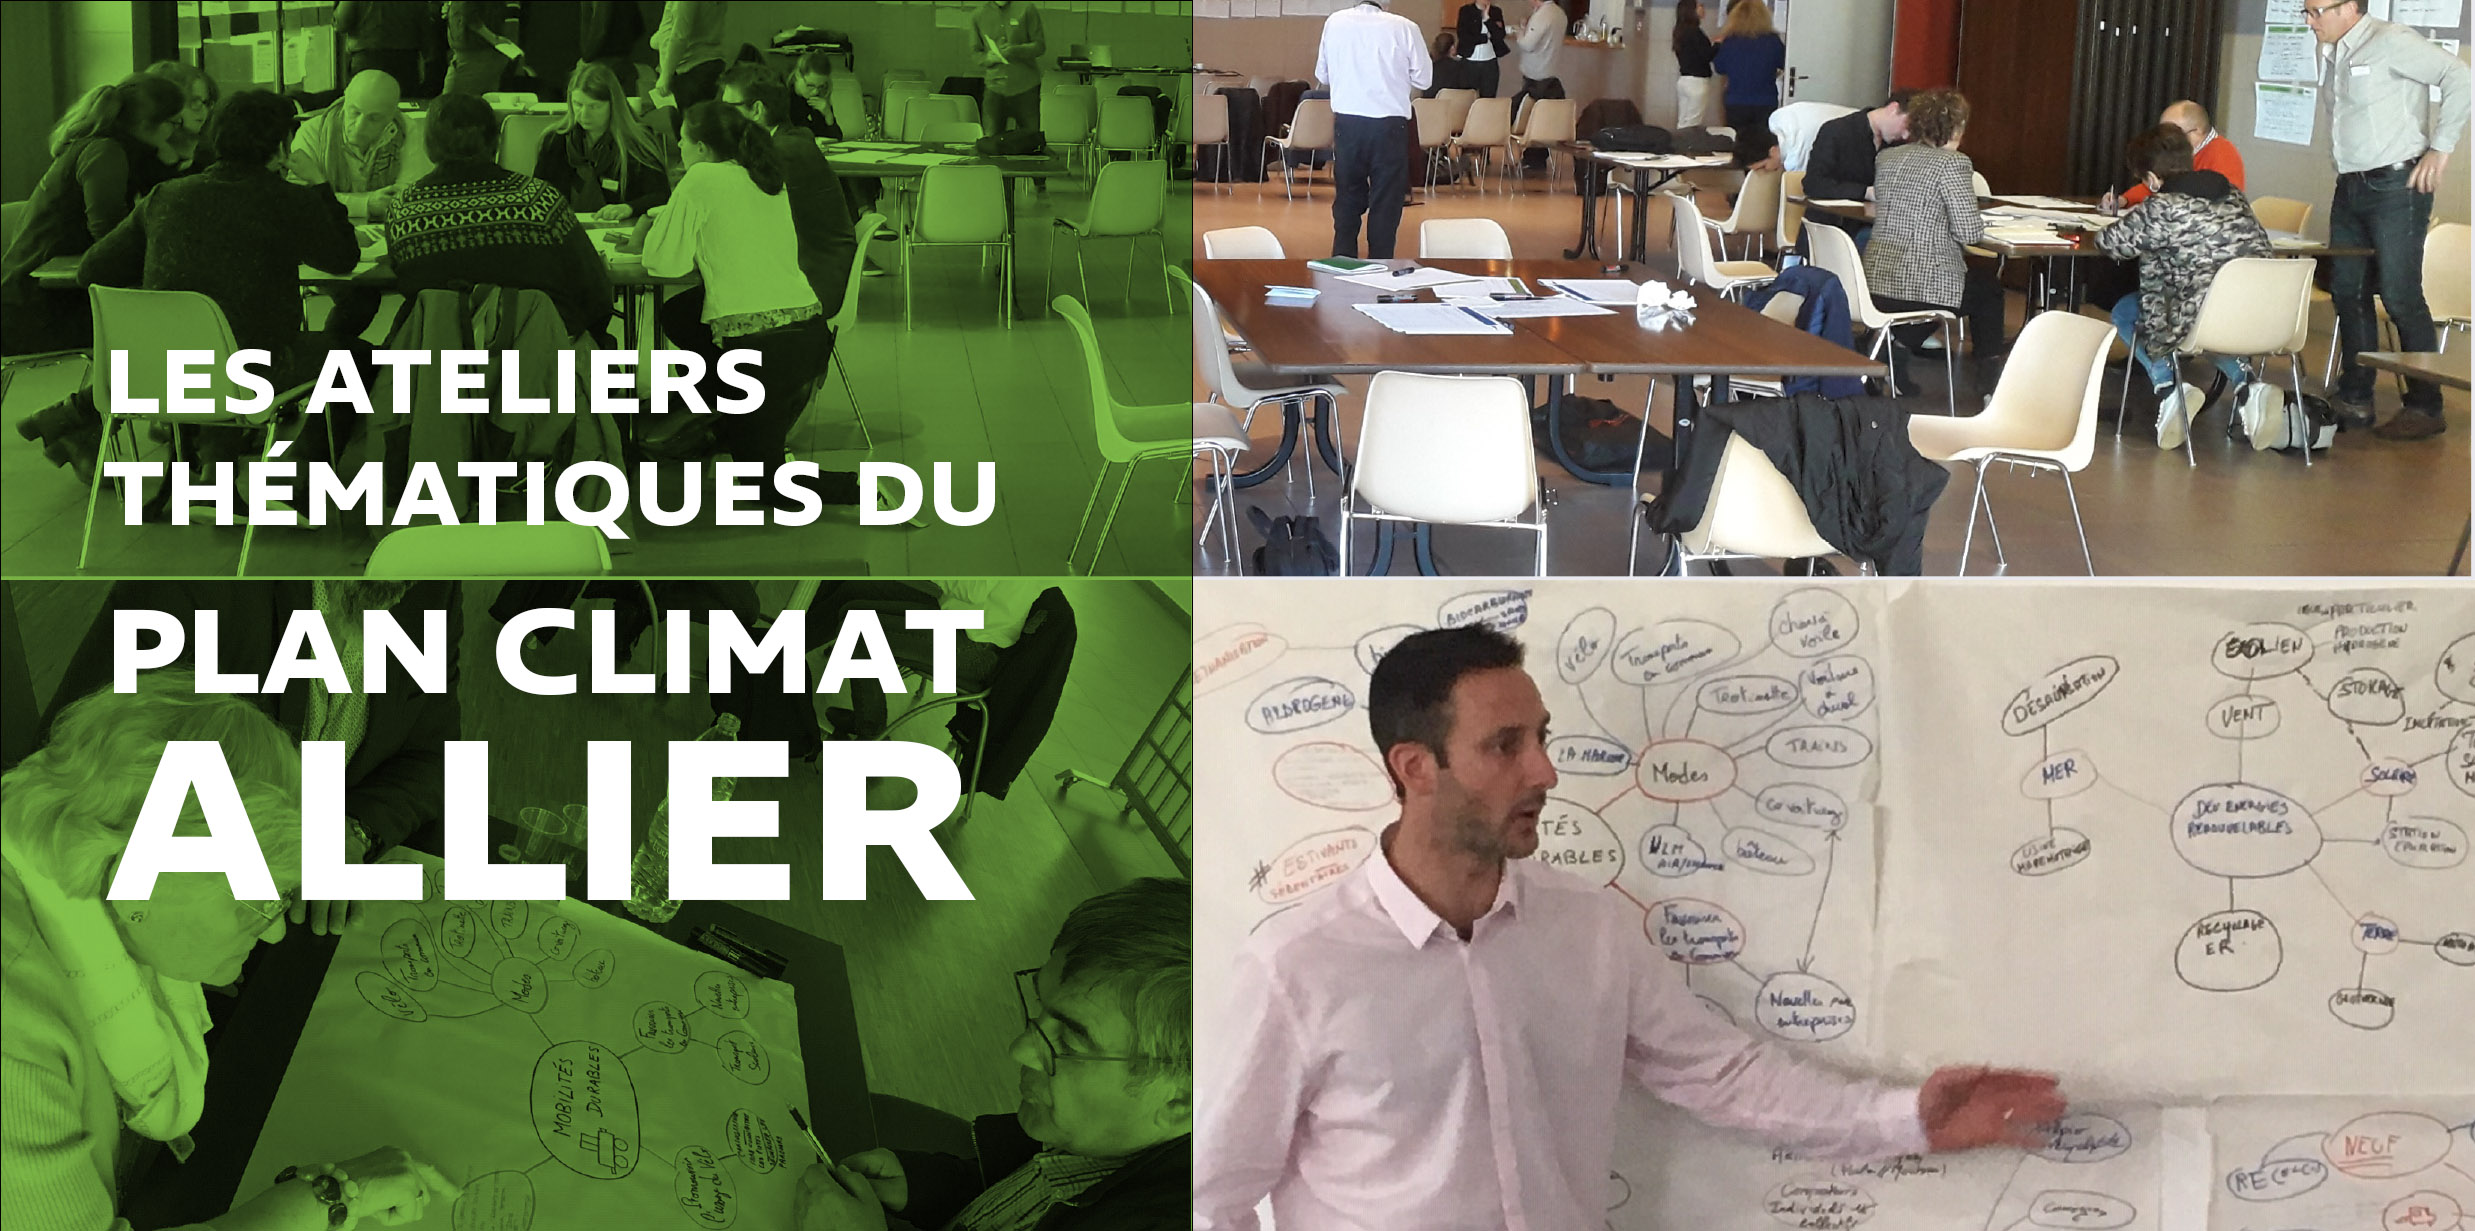 Les Ateliers thématiques du Plan Climat Allier, une démarche unique contre le changement climatique